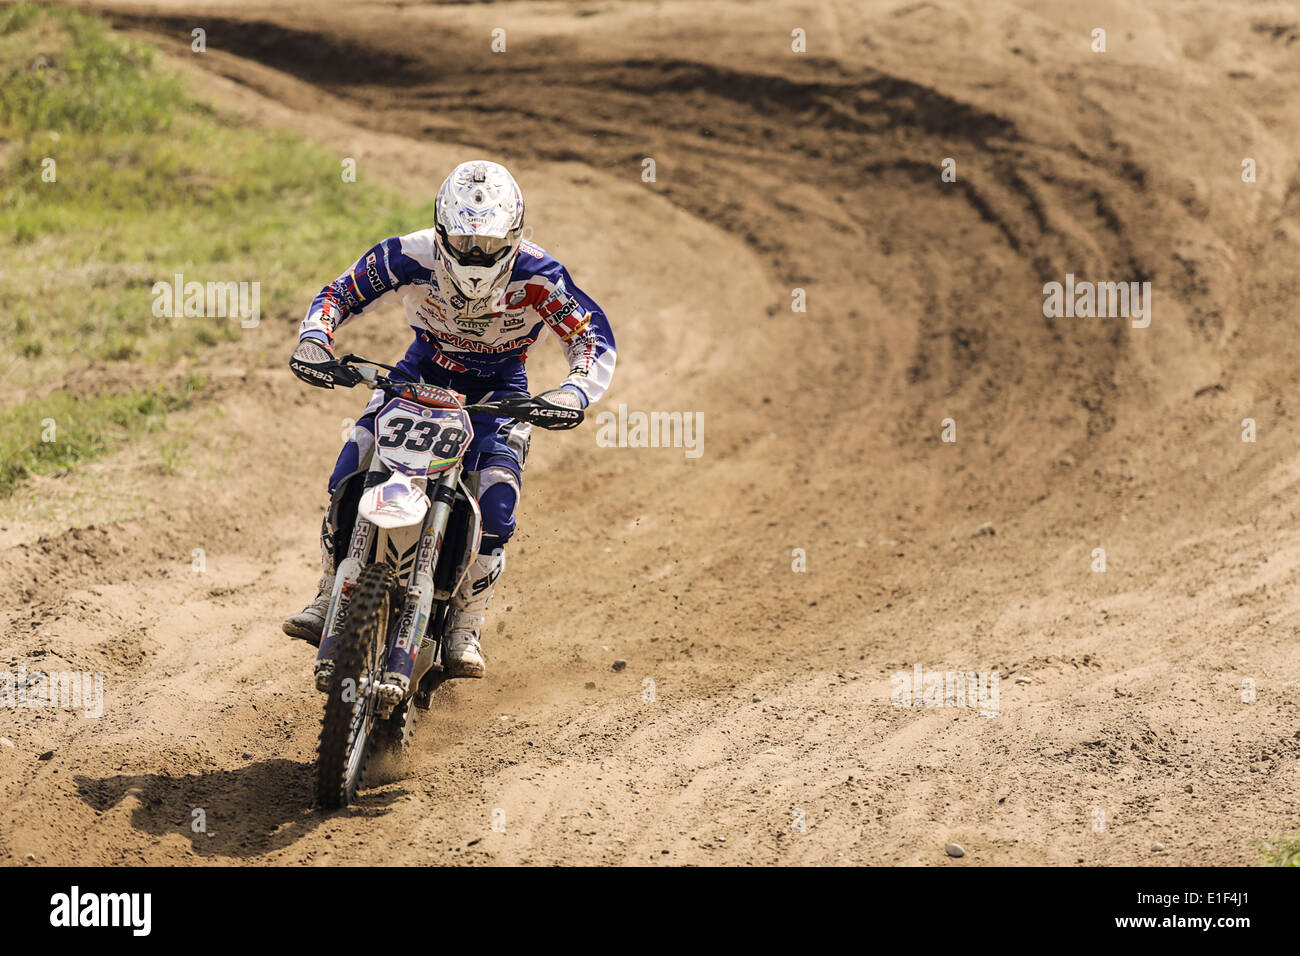 Motocross racer on dirt  track Stock Photo